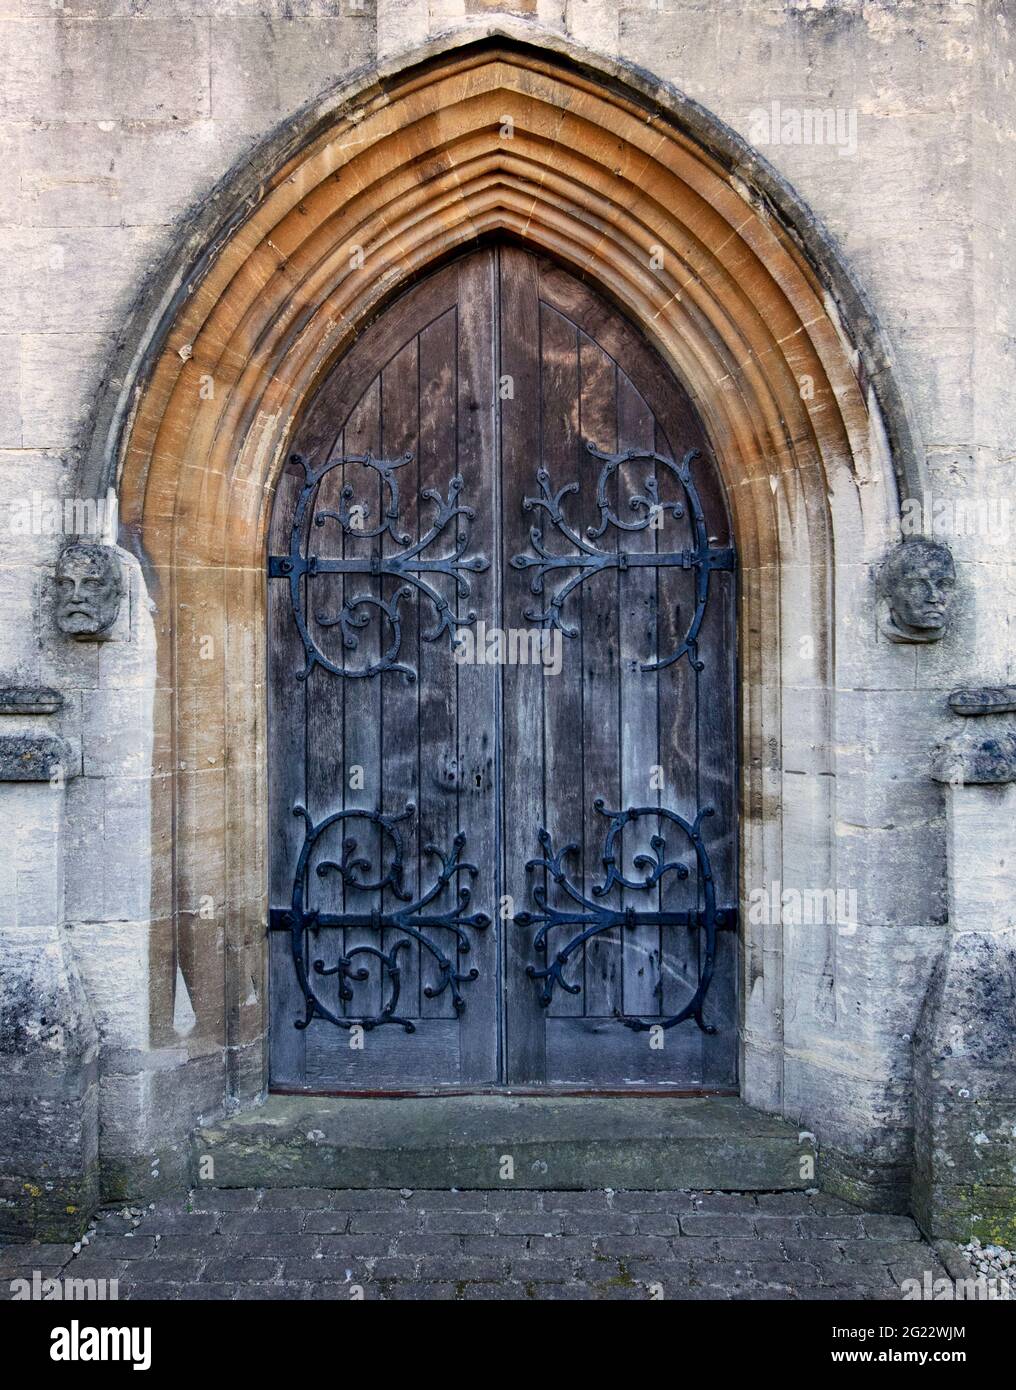 Grande porta ad arco decorata nella Cattedrale di Arundel, con teste scolpite su entrambi i lati; Arundel, West Sussex, UK Foto Stock